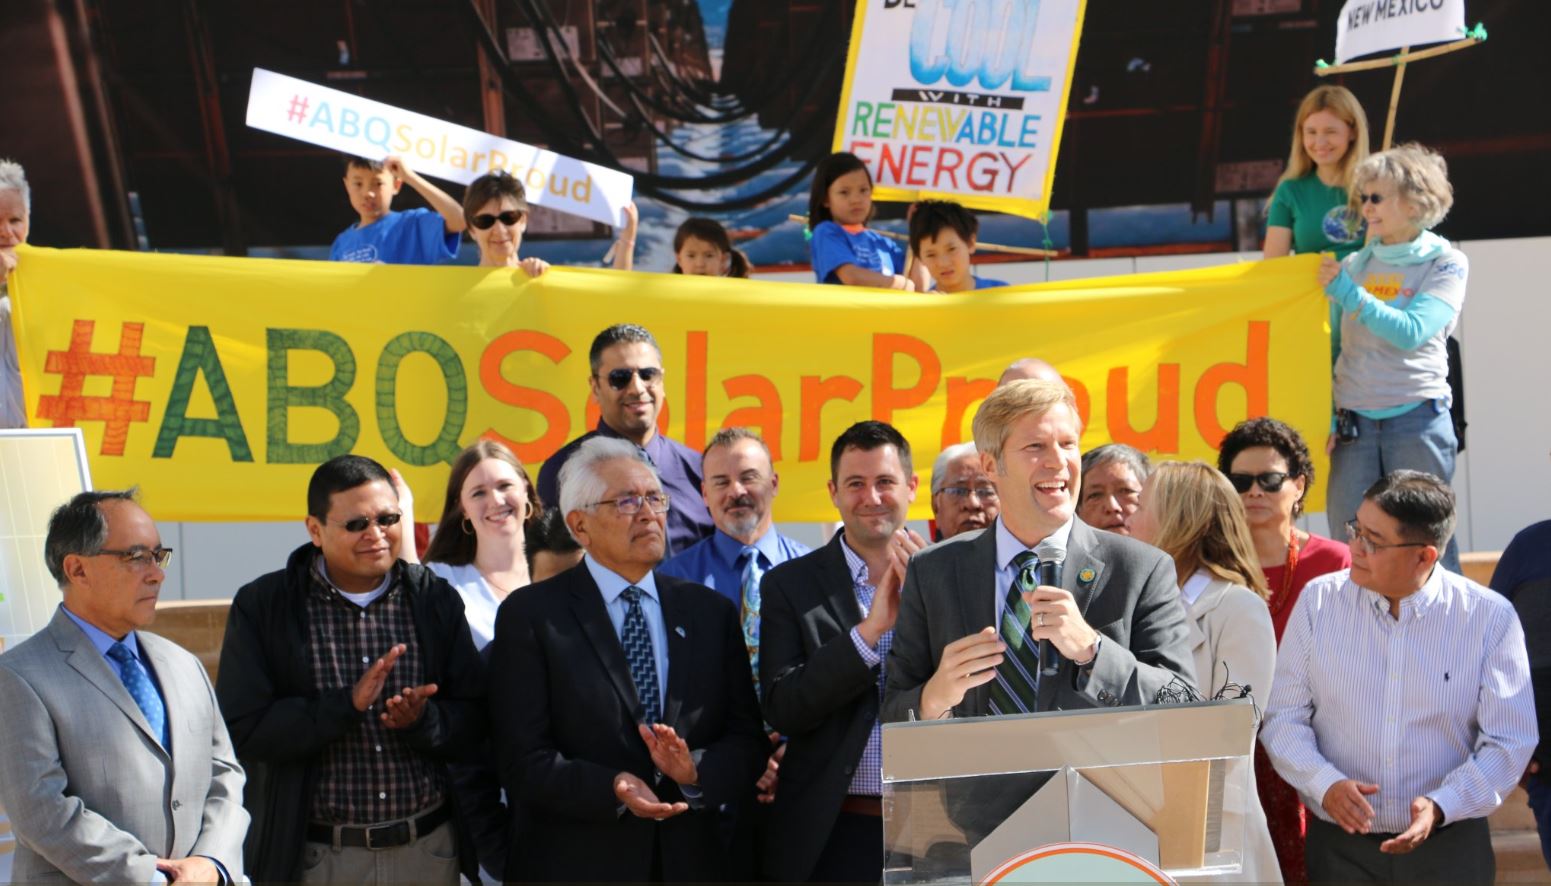 City Of Albuquerque Energy Rebates